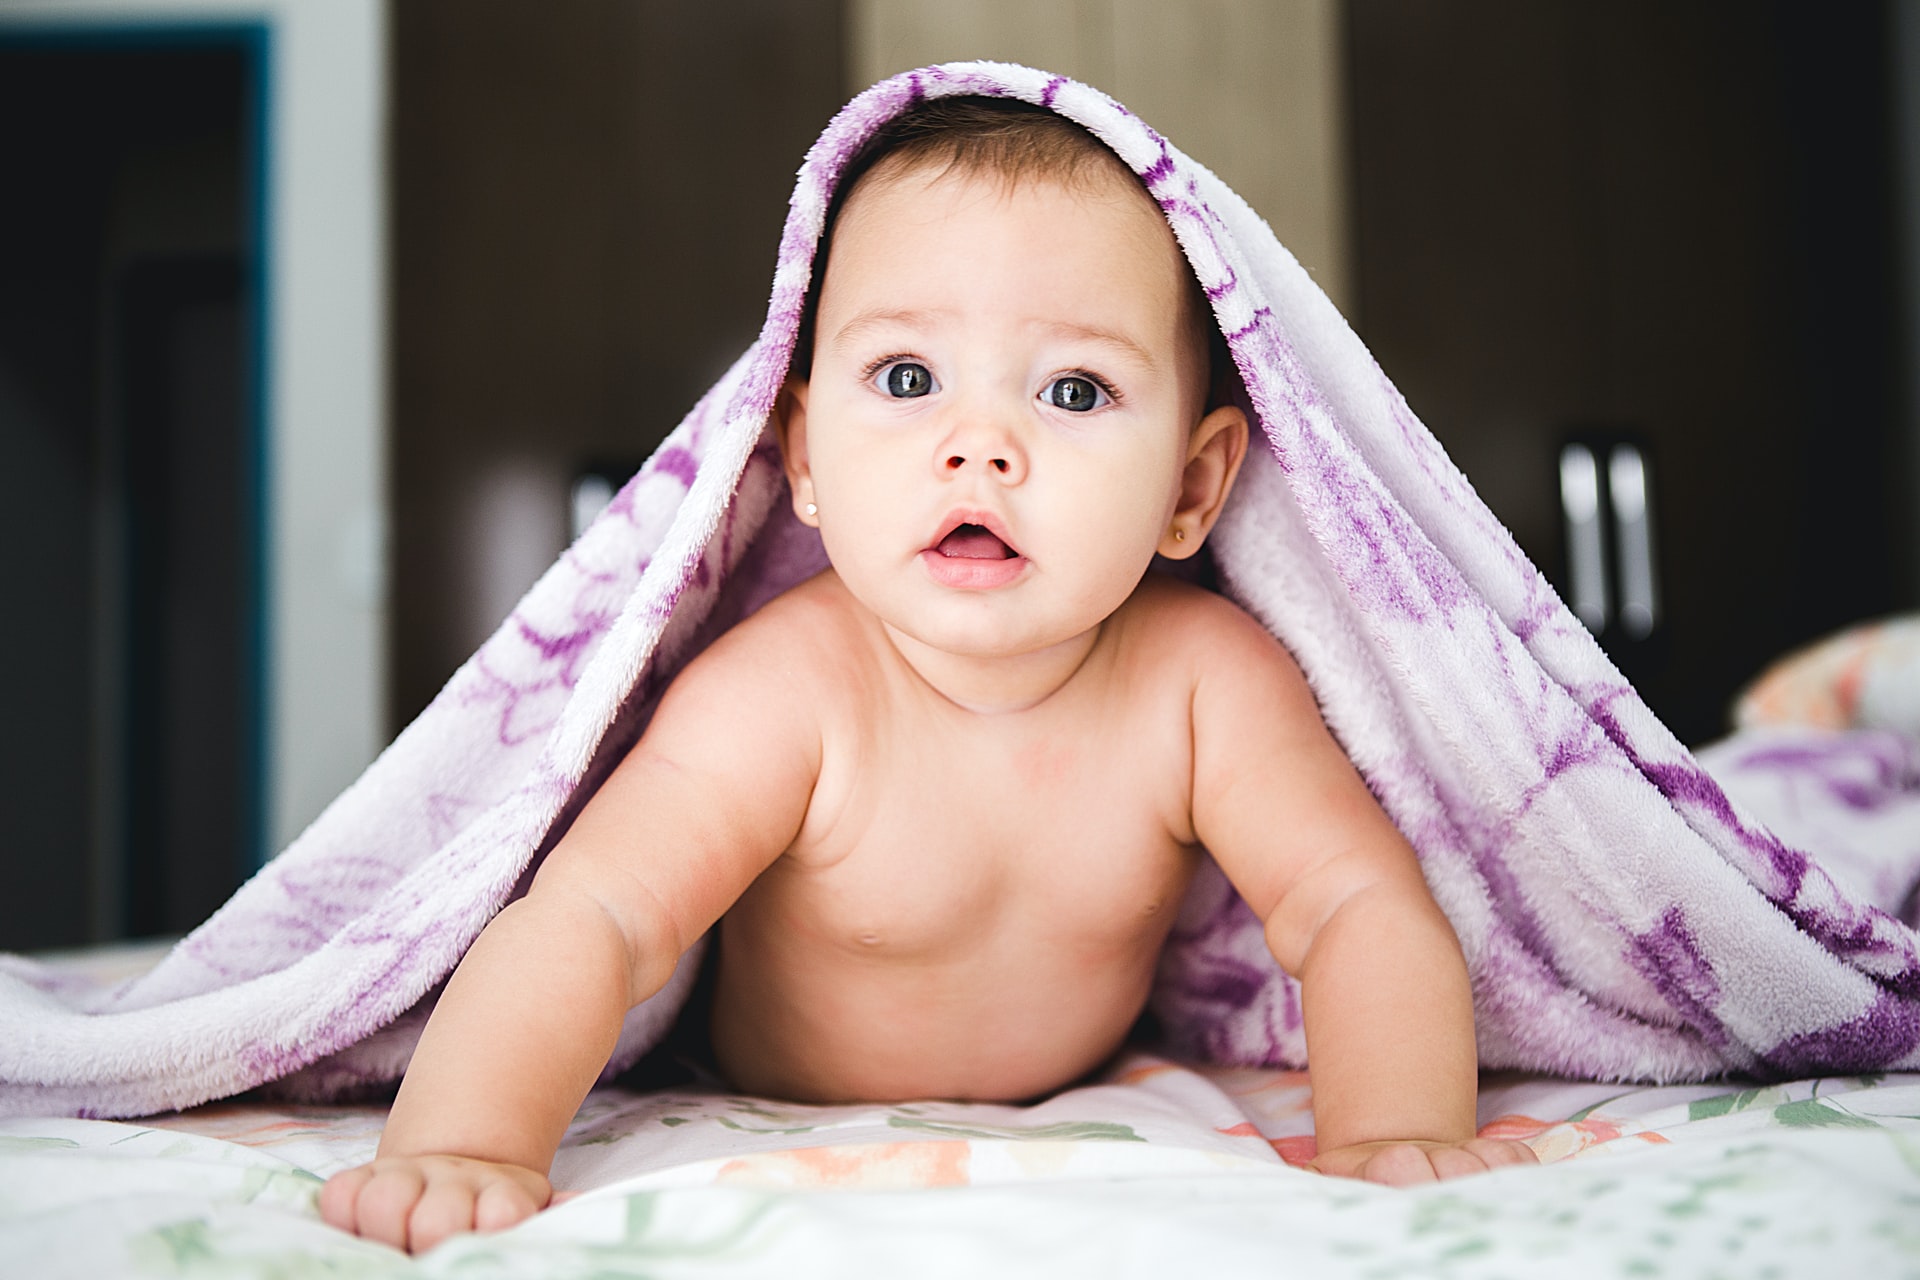 About Mommy Medicine, baby under purple blanket